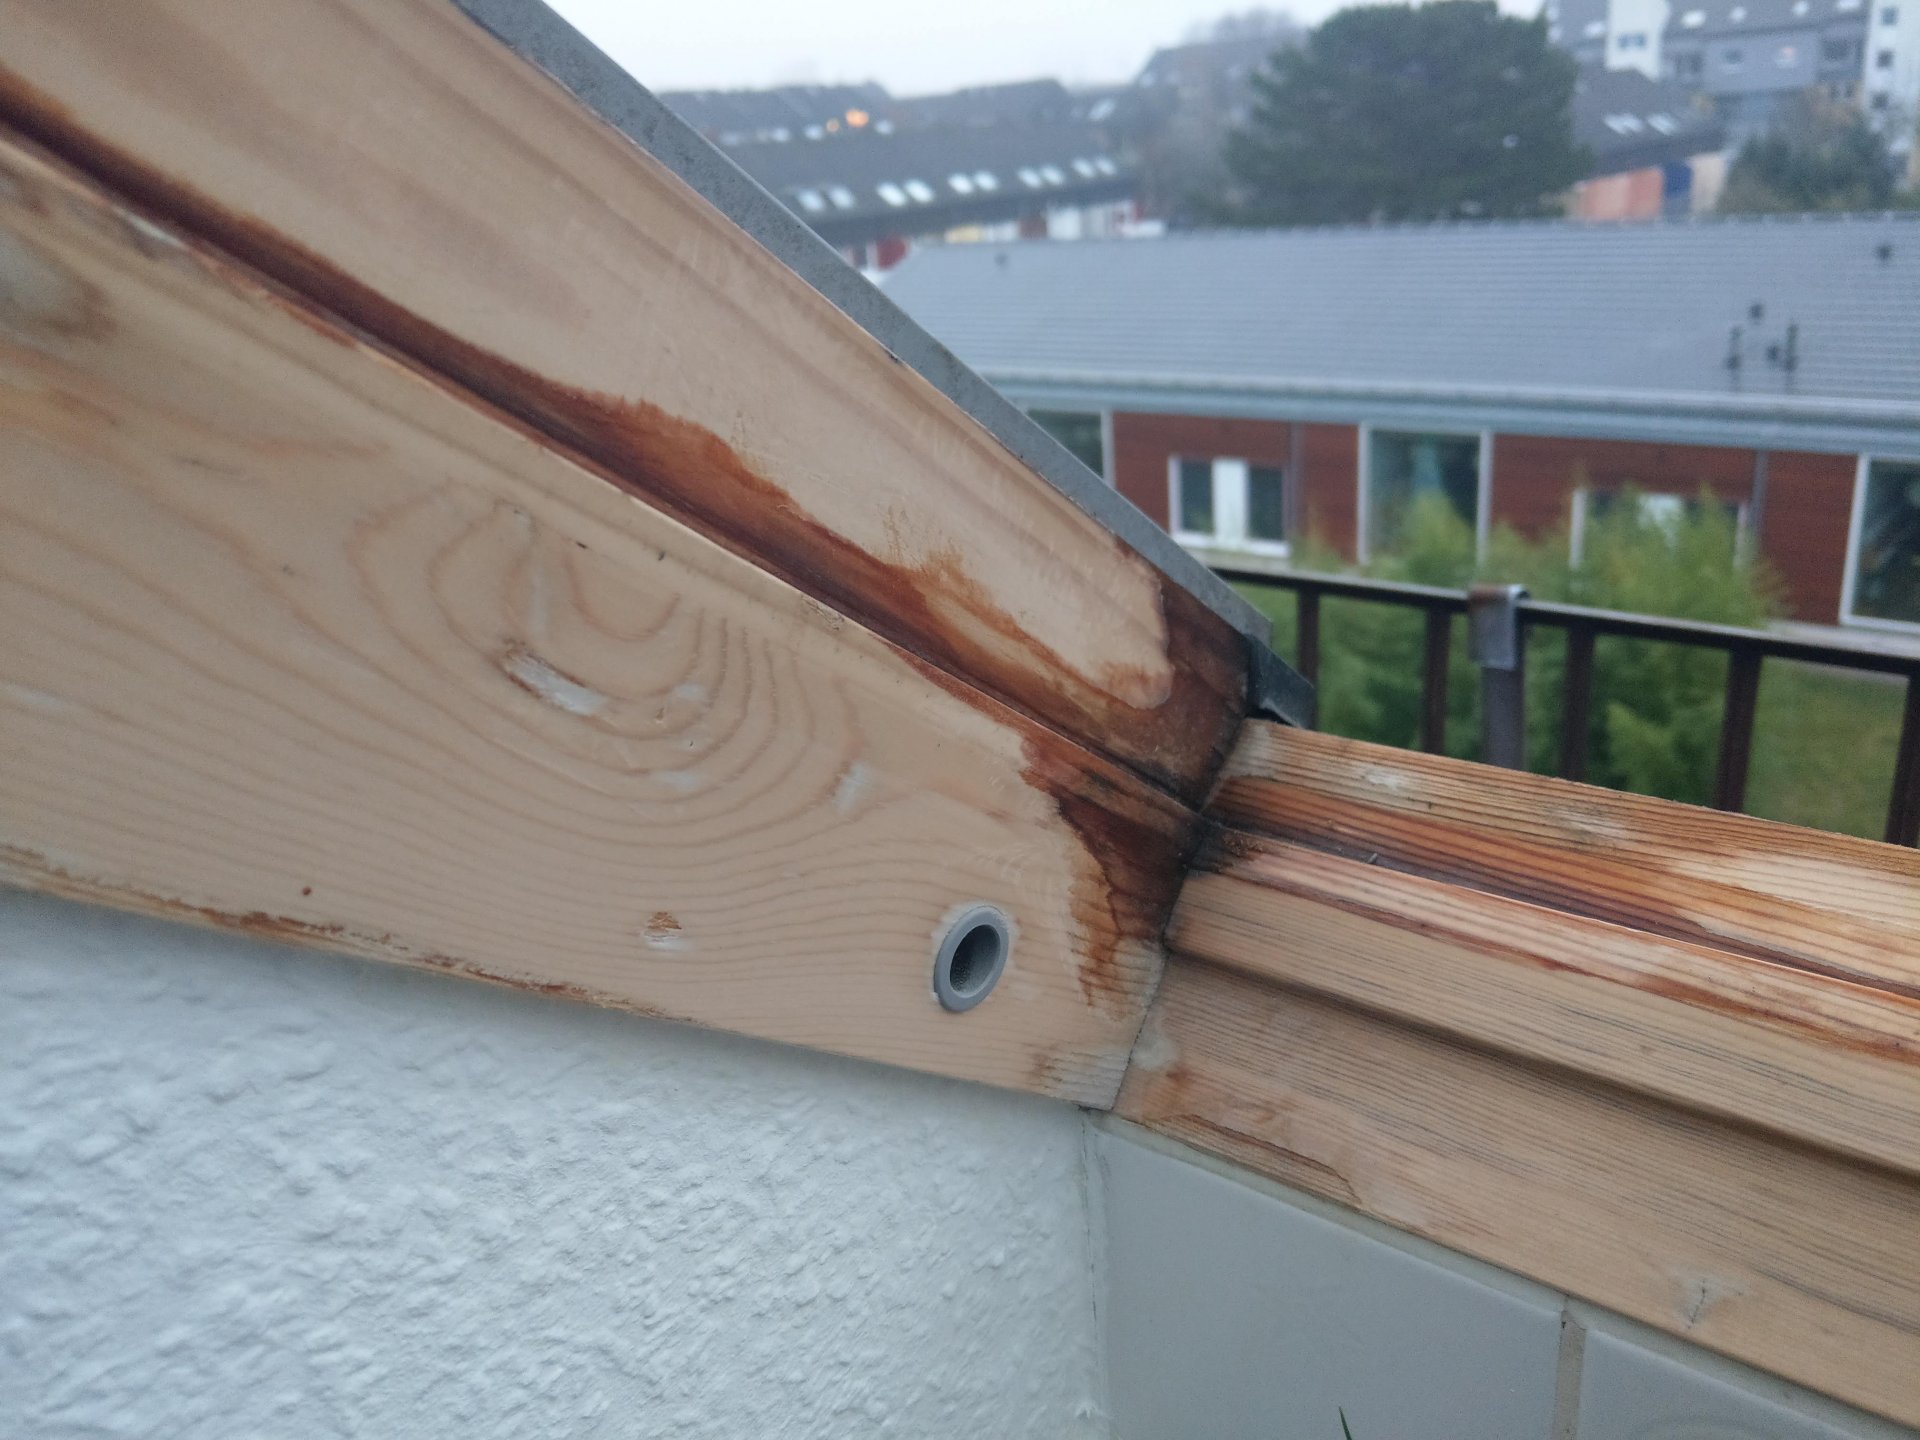 Veluxdachfenster (Holz), Rahmen nass, kein Kondenswasser